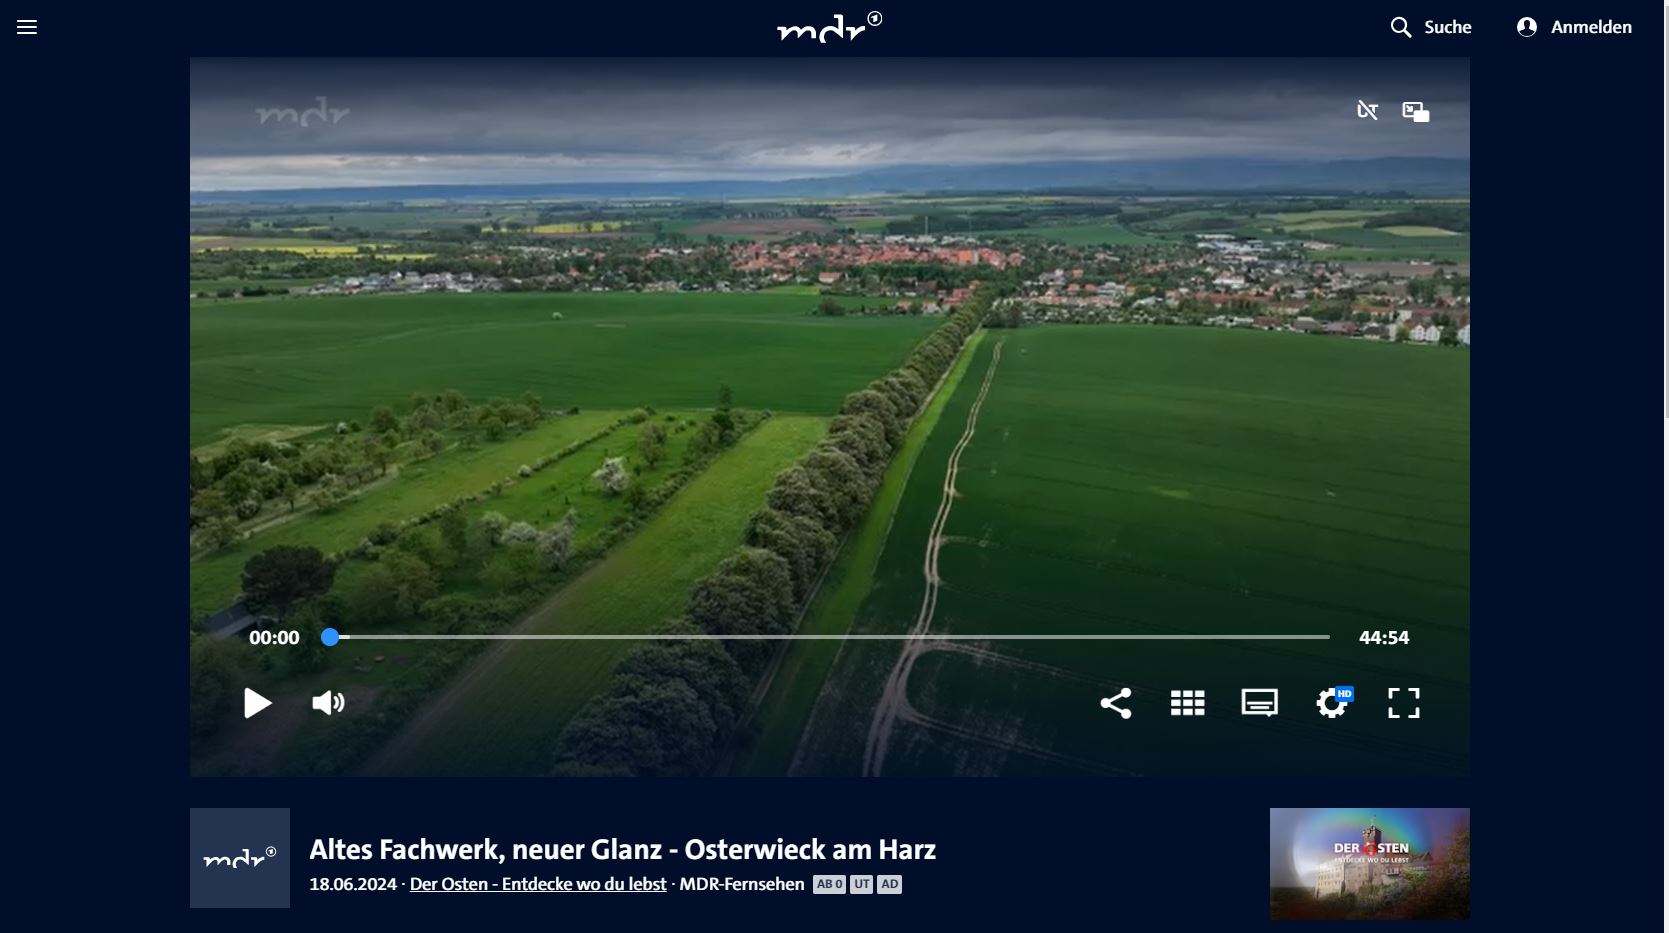 MDR Fernsehen - Altes Fachwerk, neuer Glanz - Osterwieck am Harz